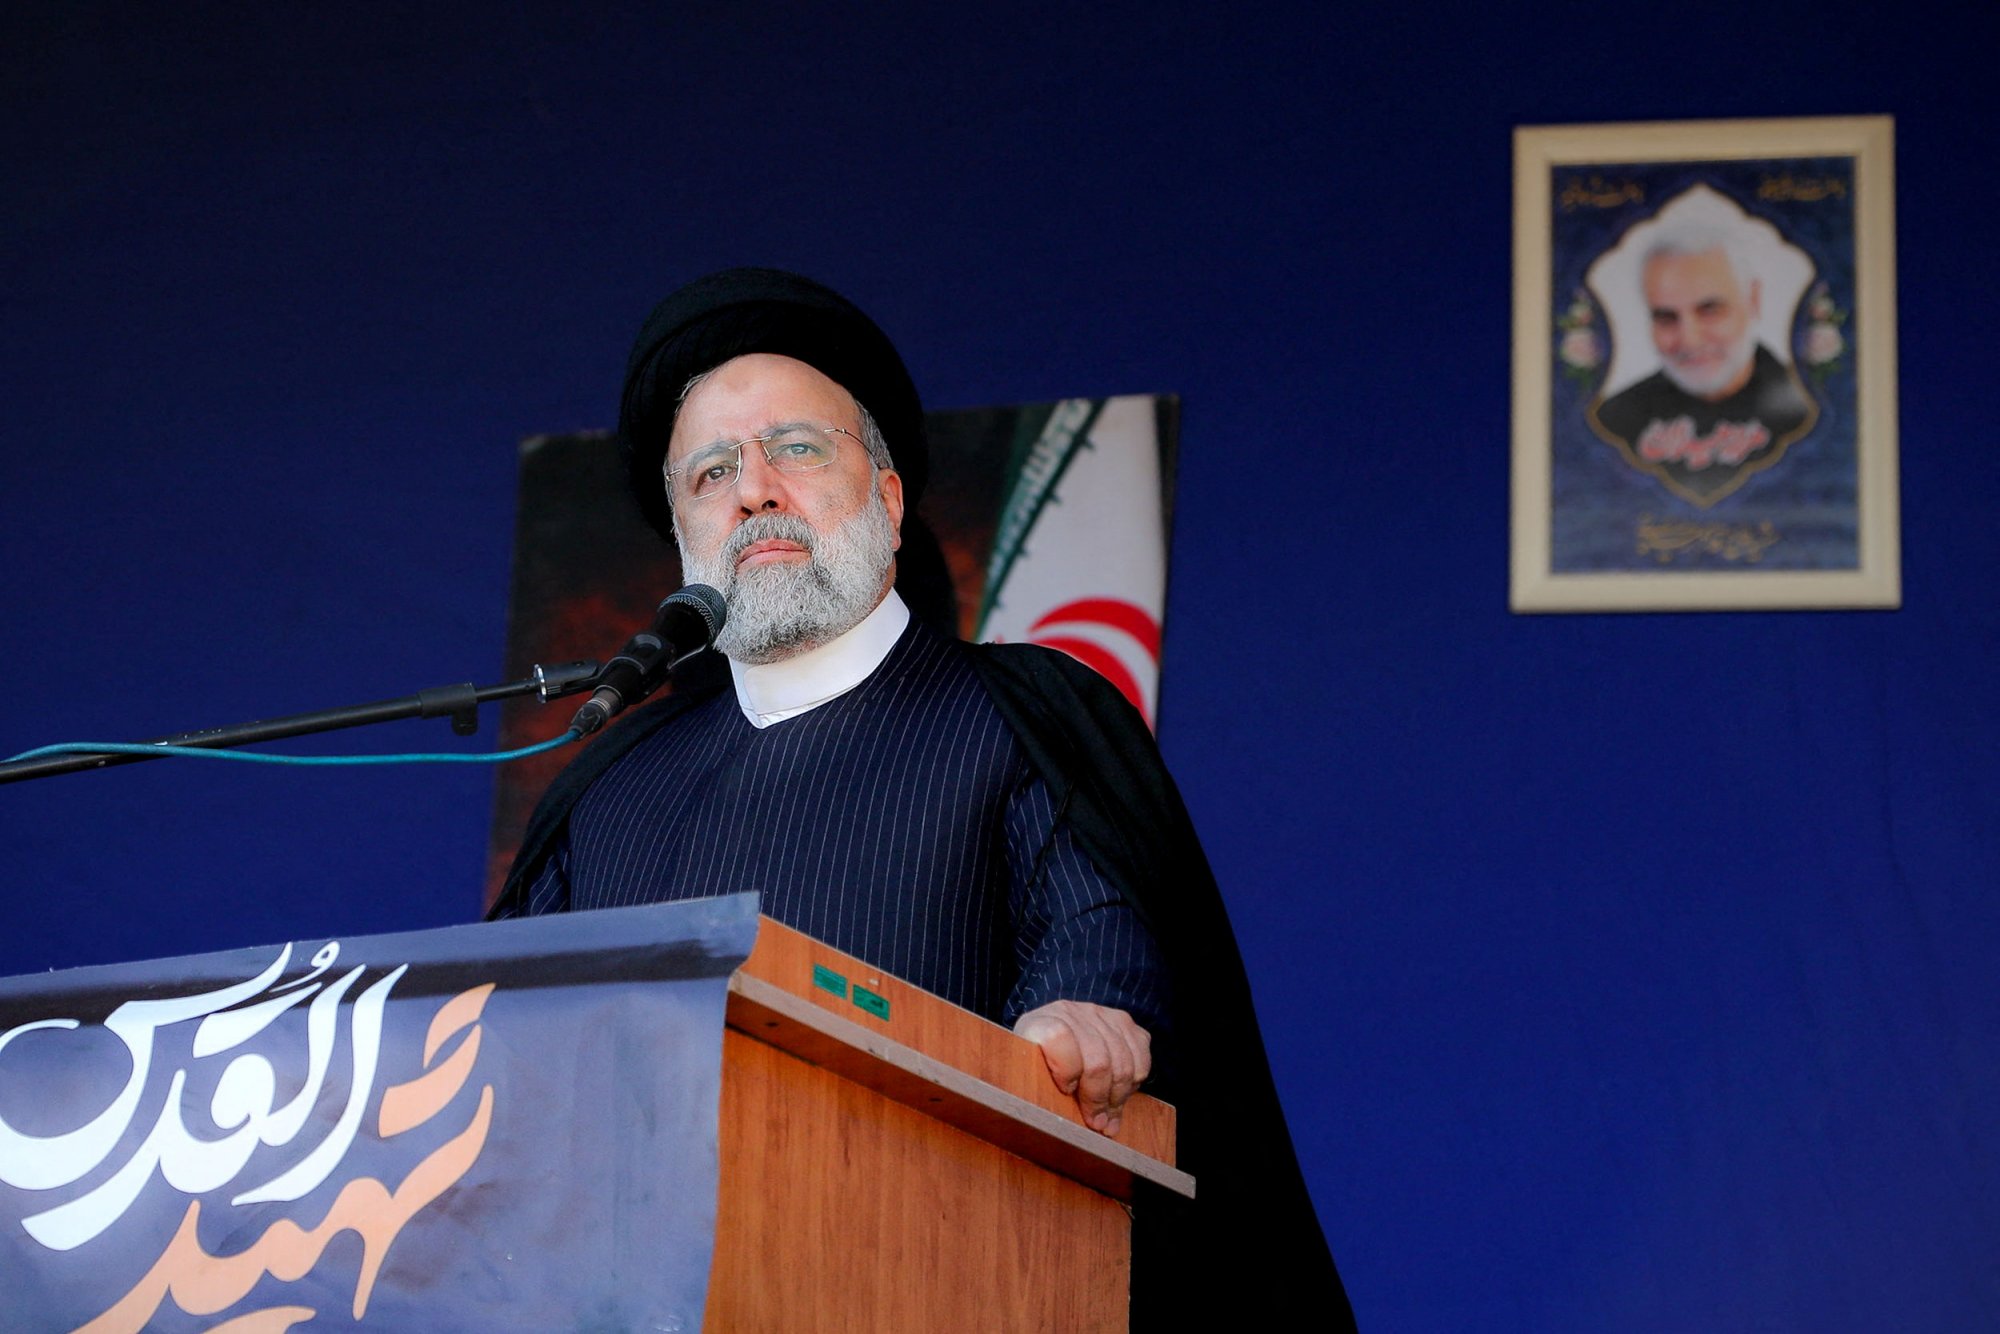 Ιράν: Δεν θα ξεκινήσουμε πόλεμο, αλλά θα δώσουμε ισχυρή απάντηση σε όποιον μας εκφοβίζει, λέει ο Ραϊσί